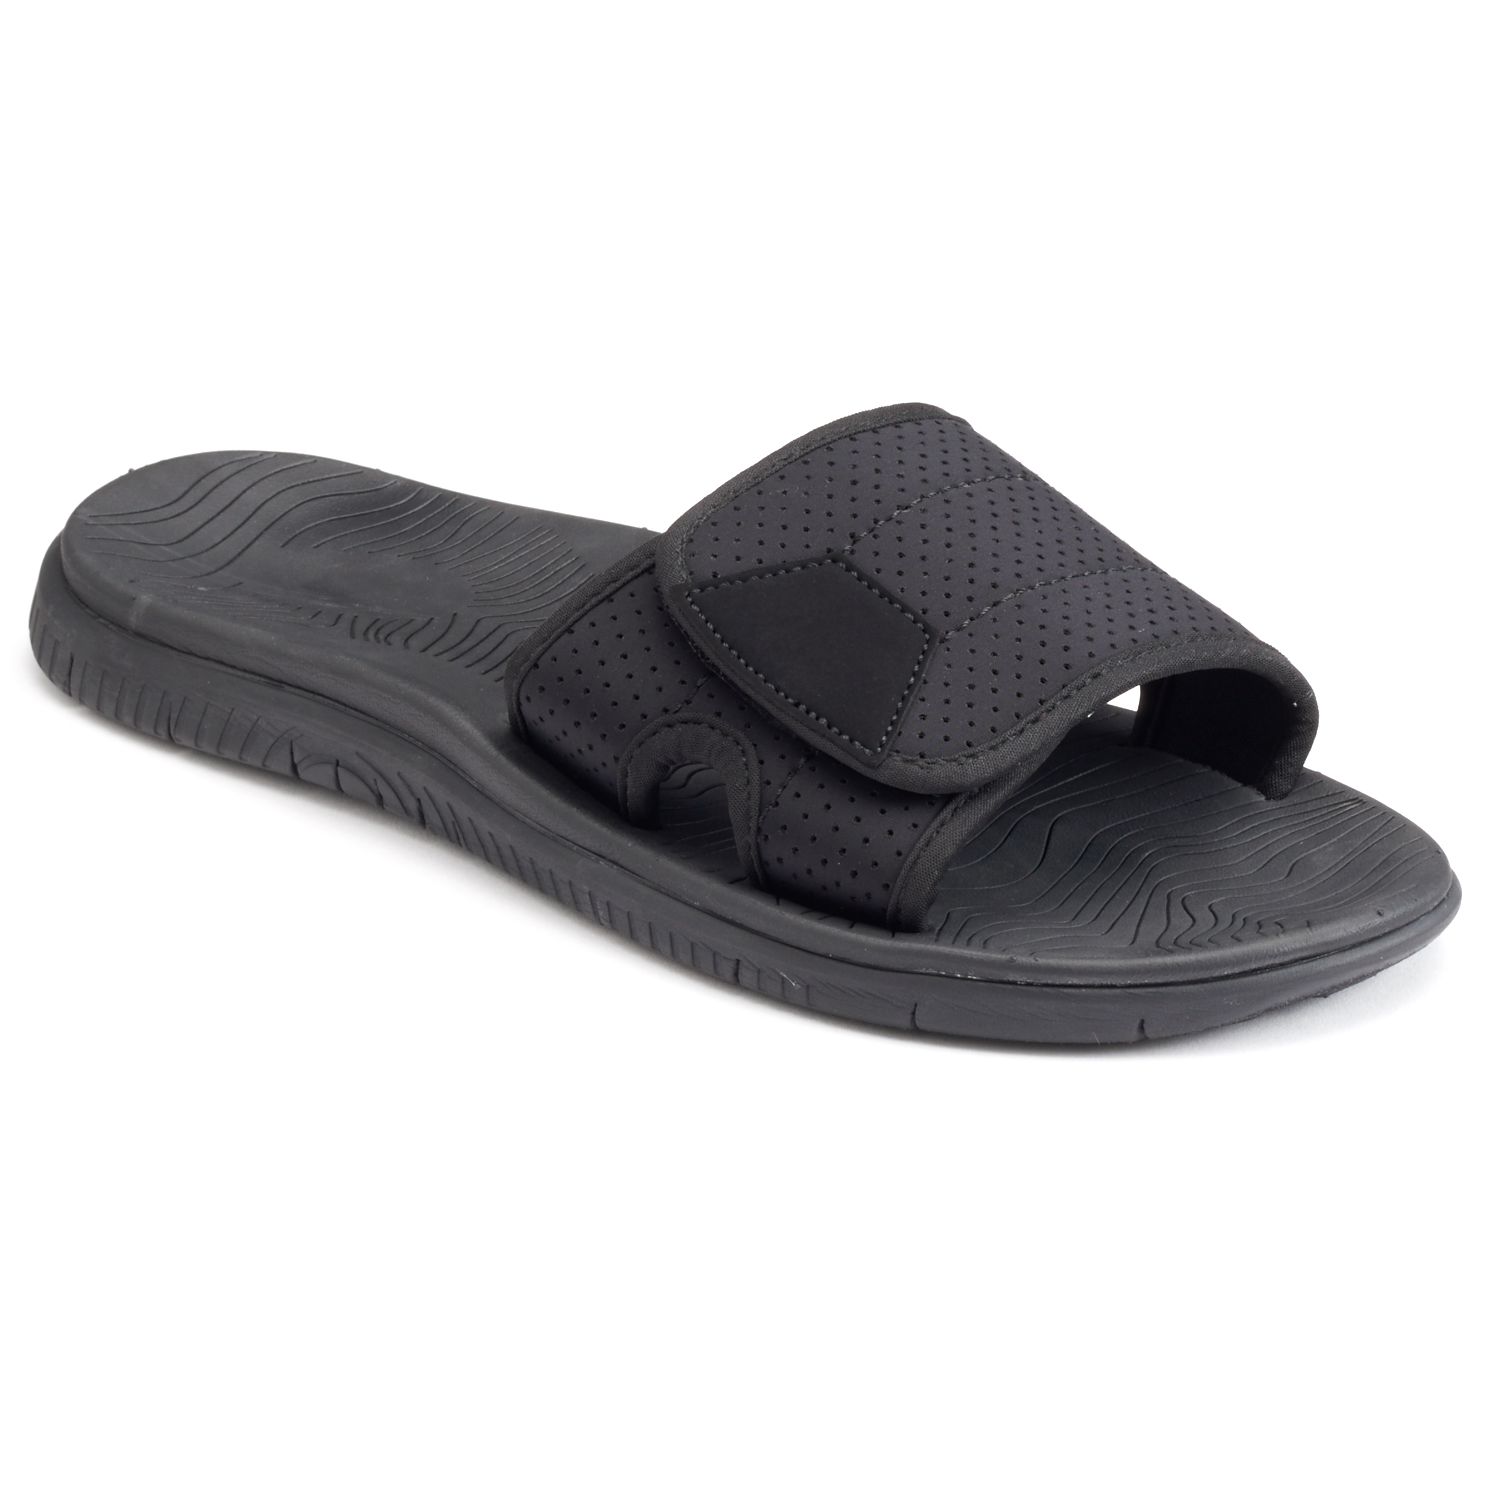 men's adjustable slide sandals